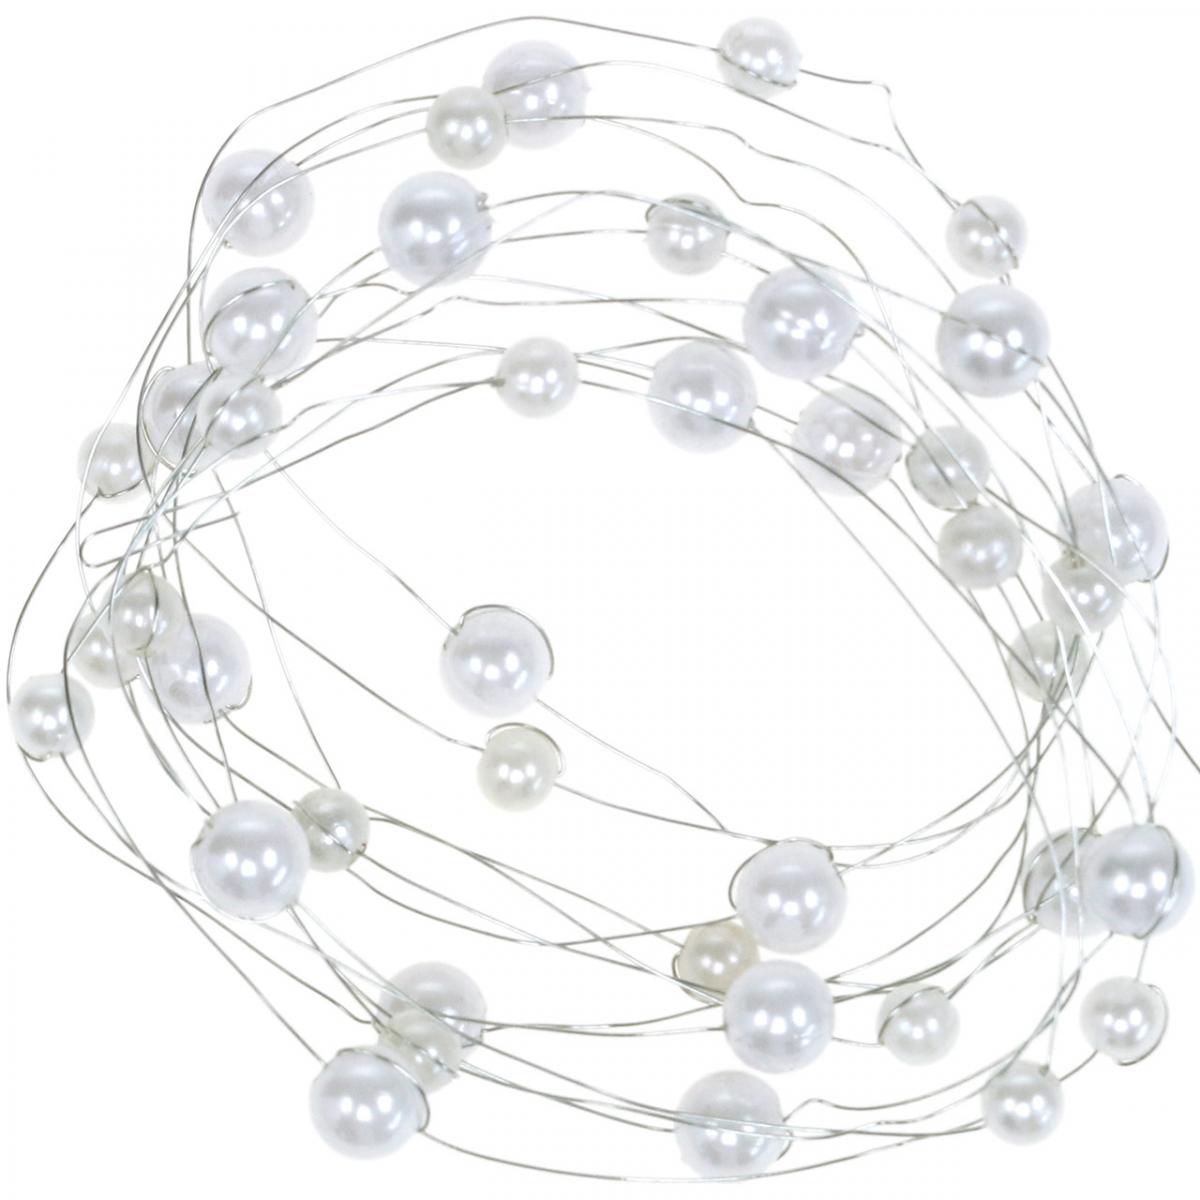 8mm Perle Artificiali Corde Perline Catena Perla Ghirlanda Rotolo per Decorazione della Festa Nuziale Fai da Te HEEPDD 60m / Roll Perline Filo di Perle 3mm Bianca 